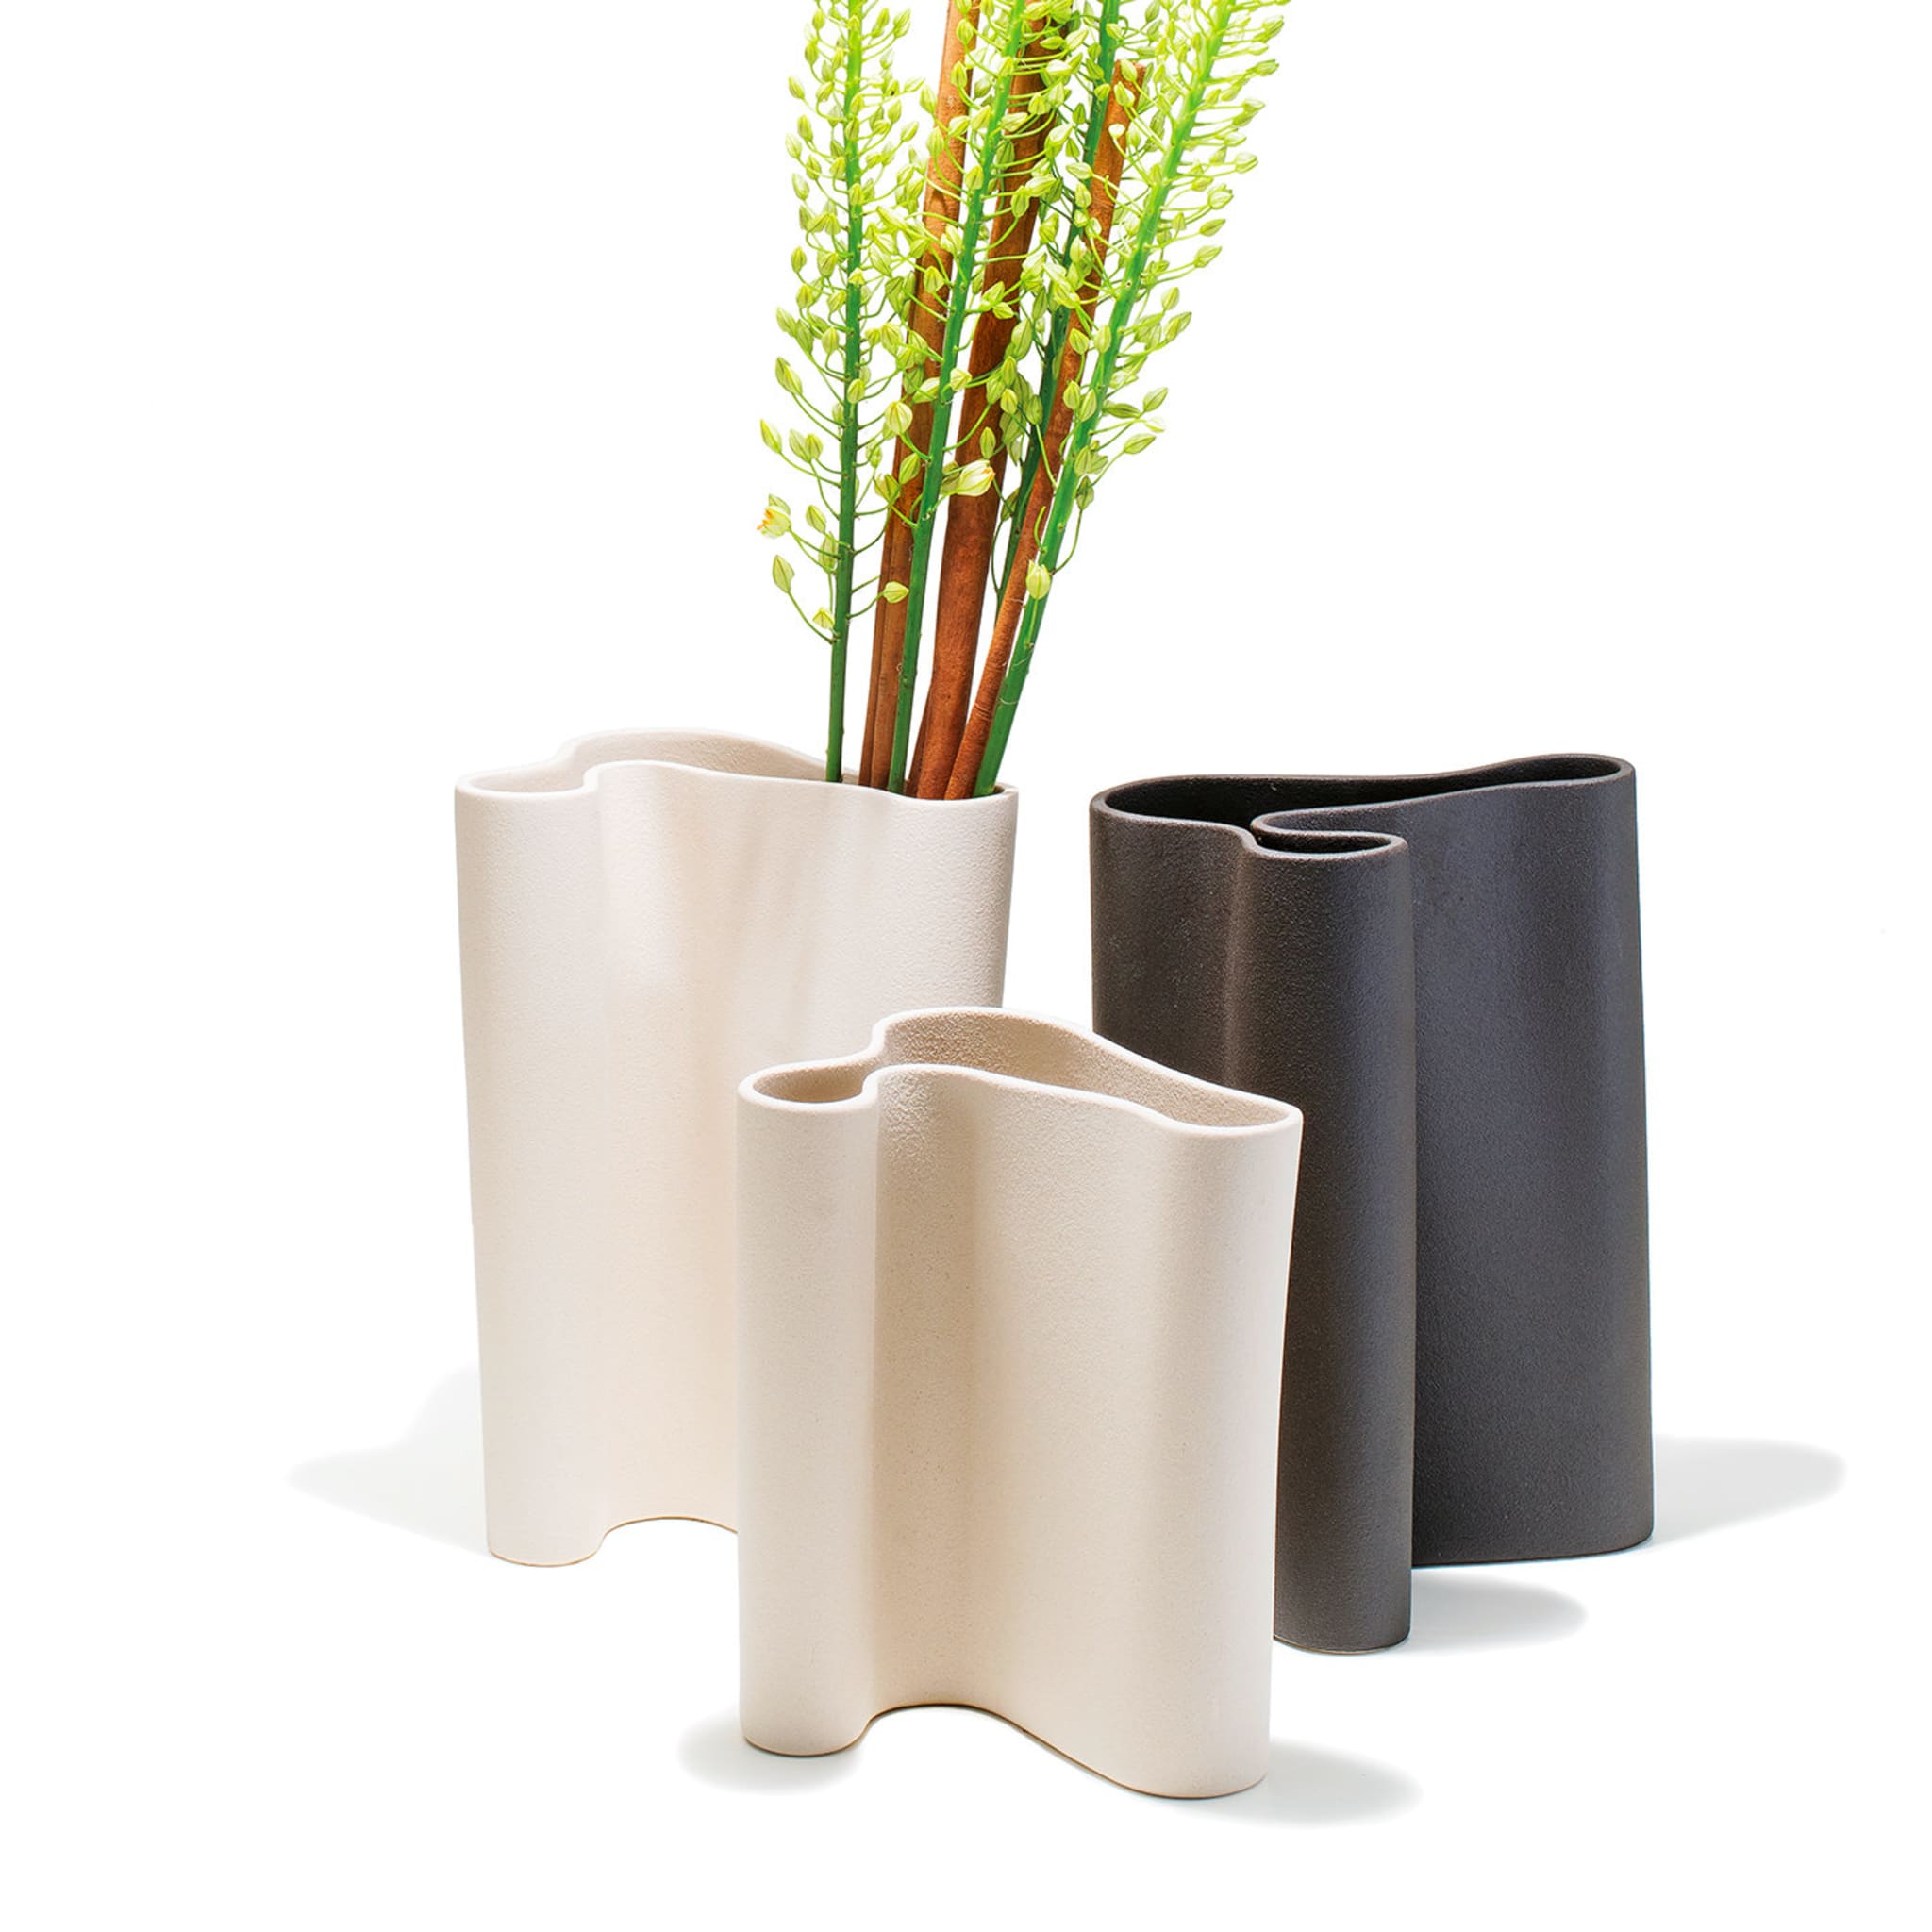 Curved Beige Vase by Flavio Cavalli - Alternative view 1